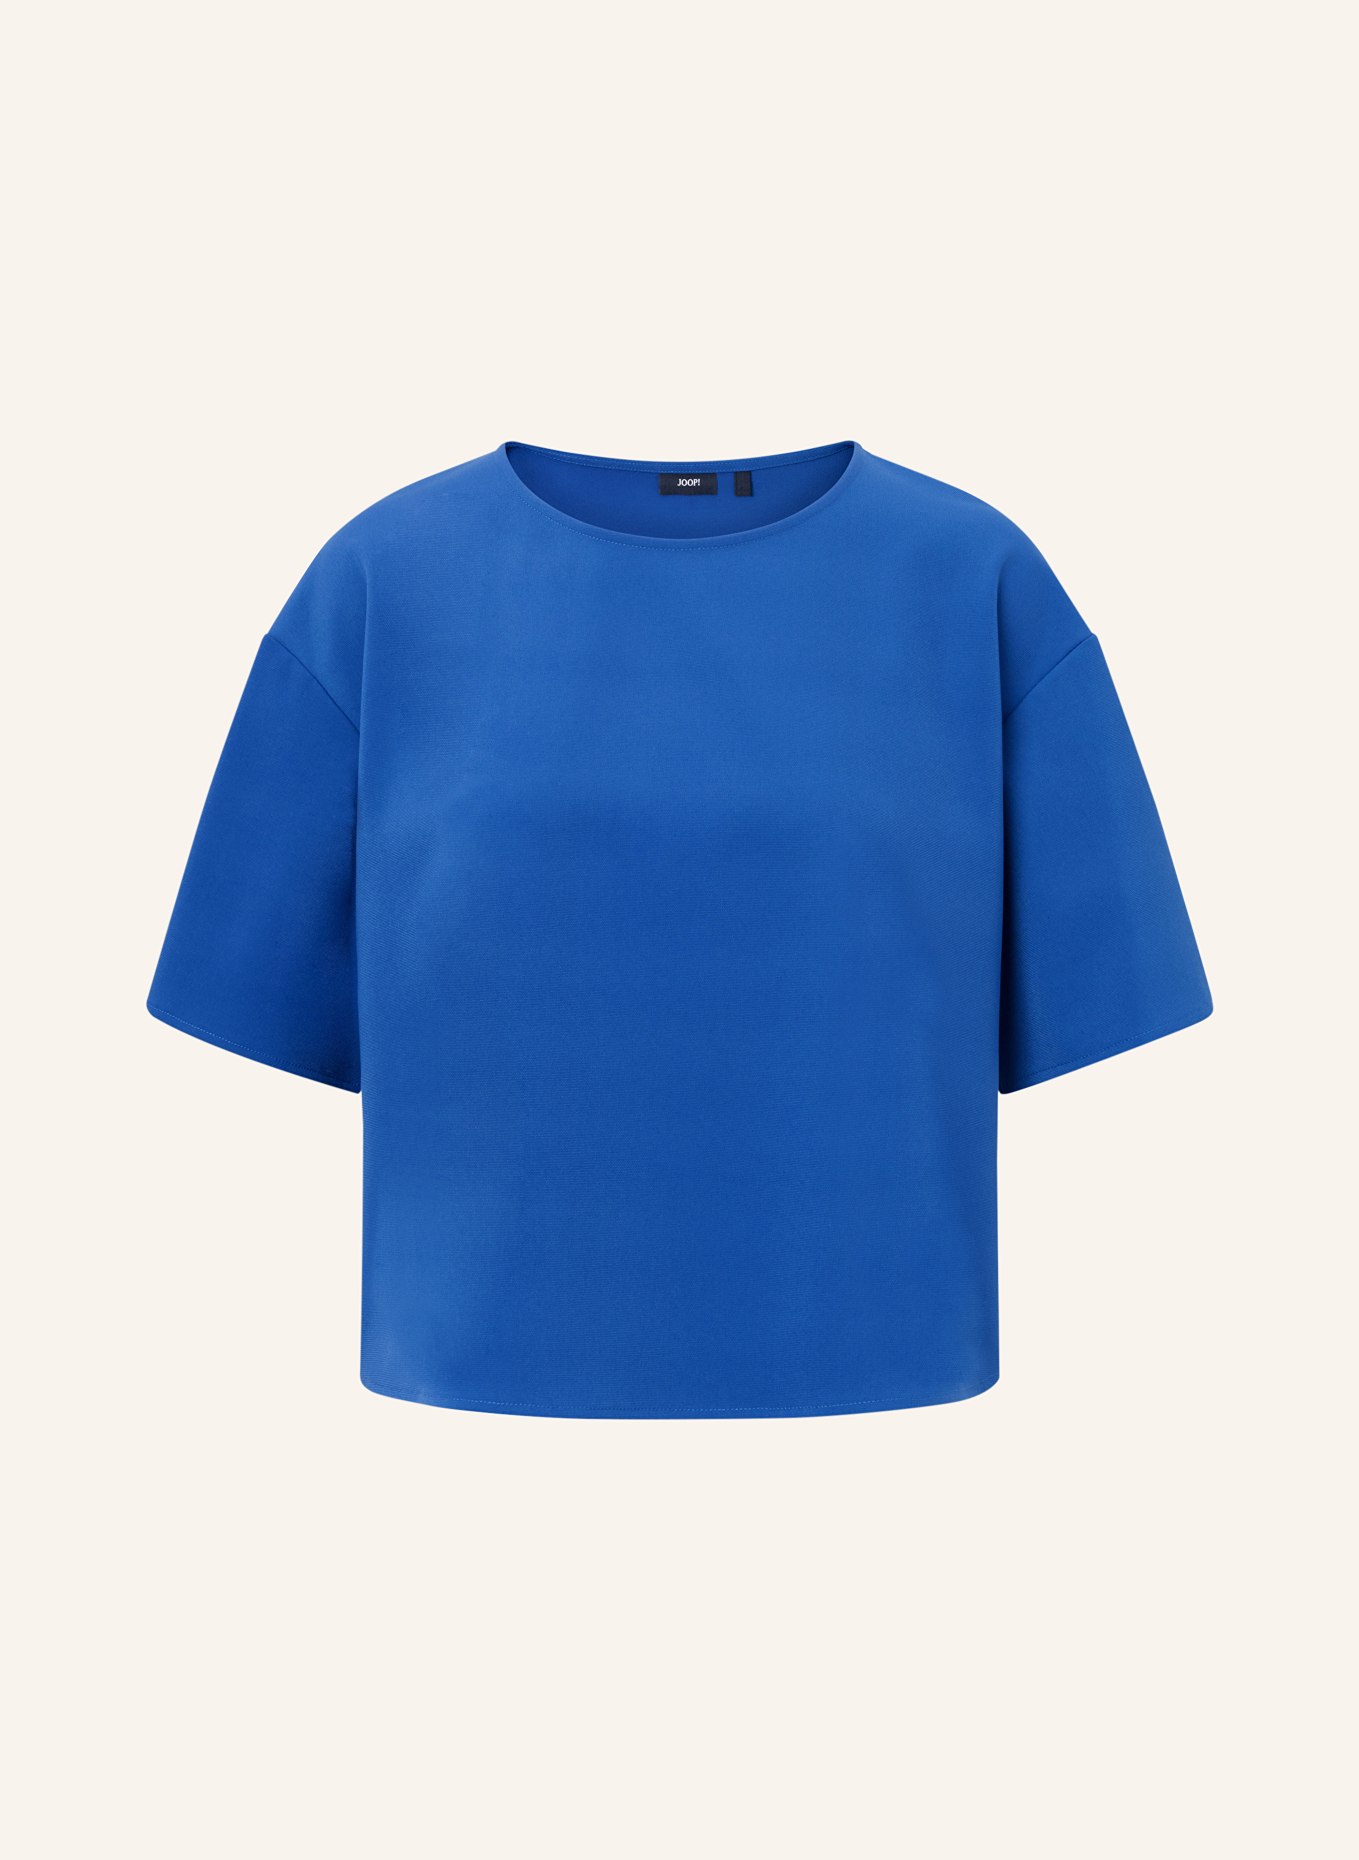 JOOP! Shirt blouse, Color: BLUE (Image 1)